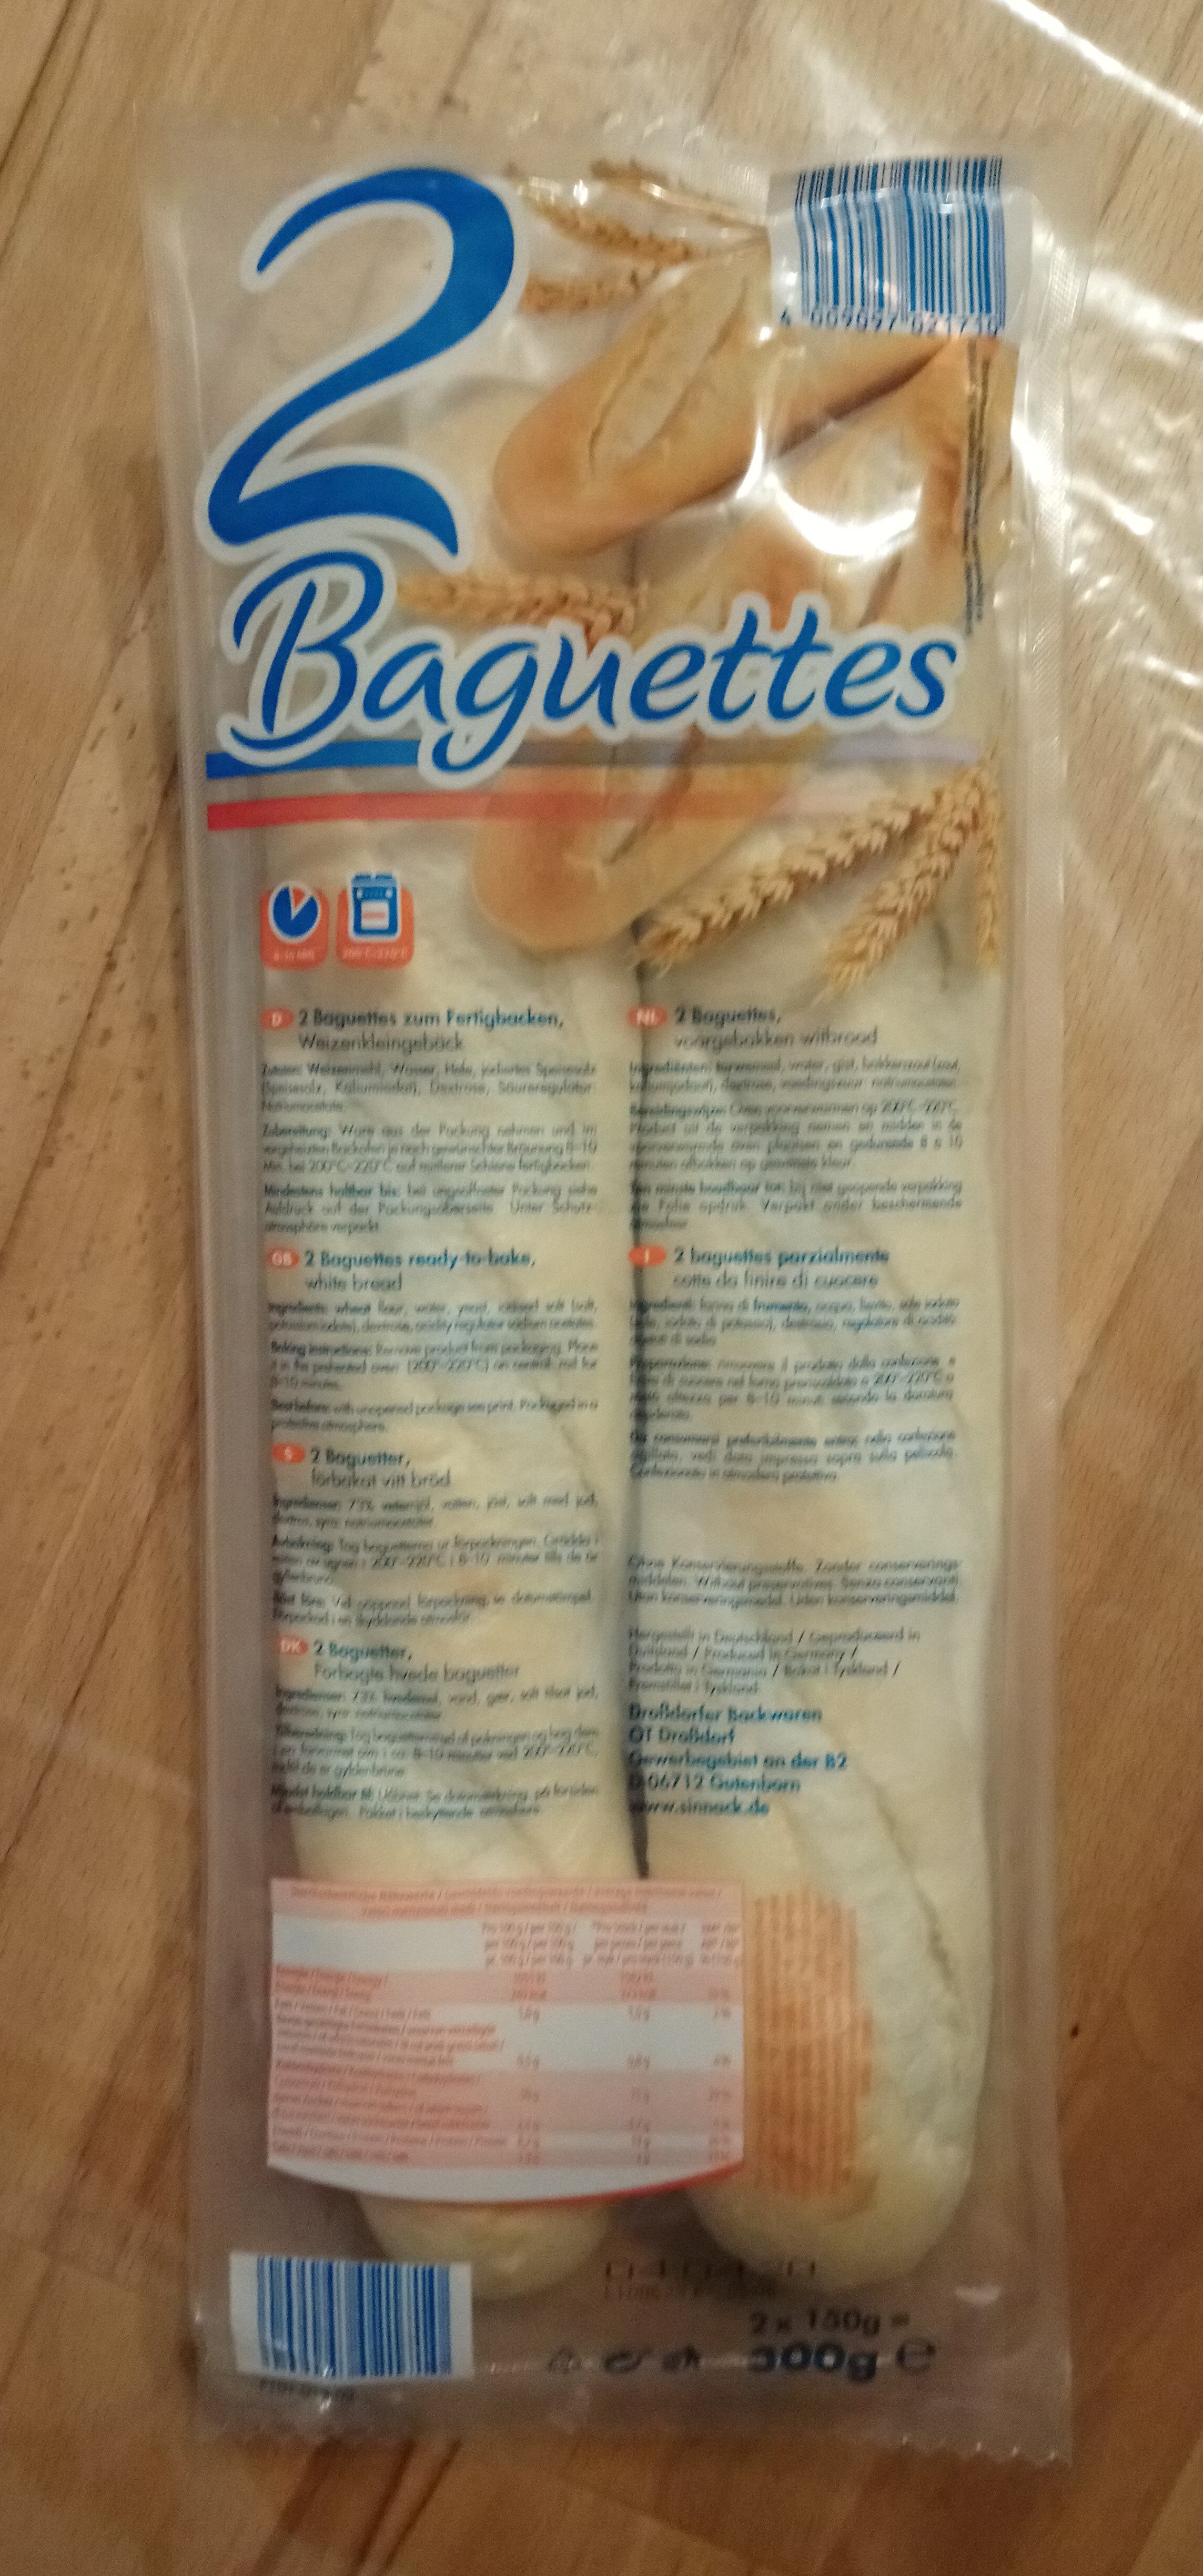 2 Baguettes - Product - de